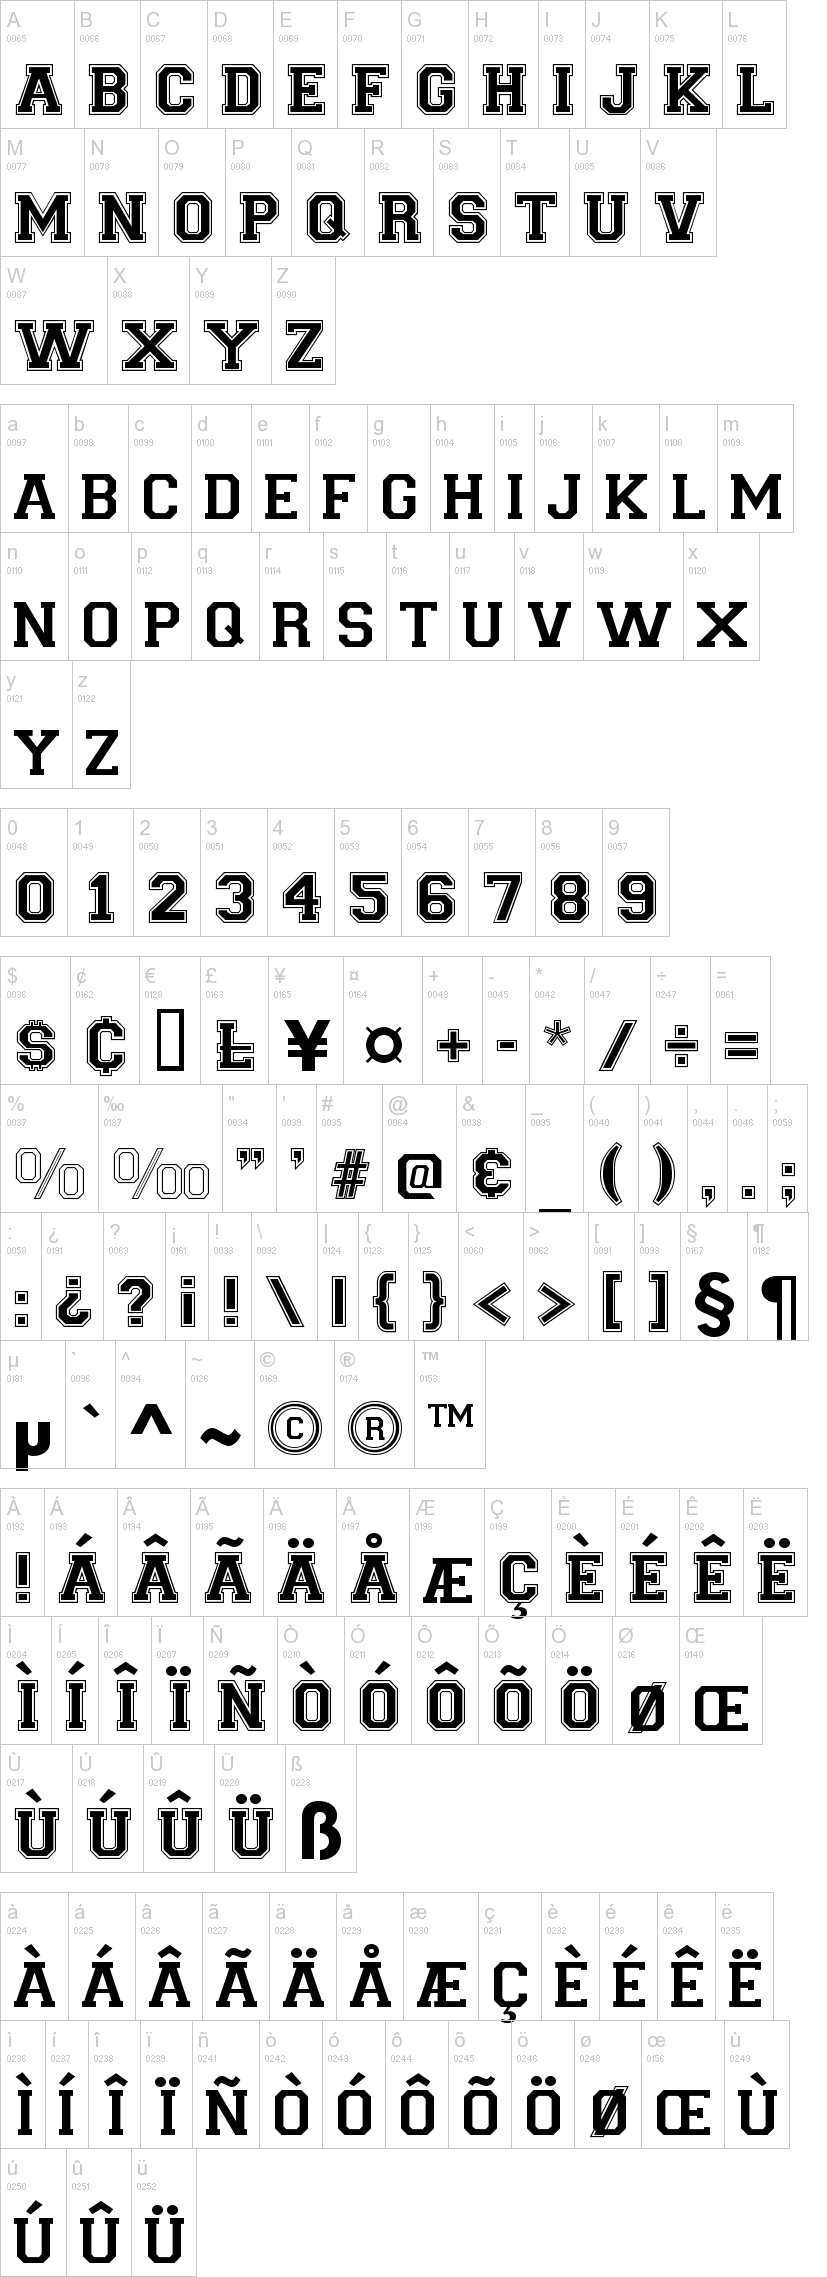 Free baseball fonts for mac